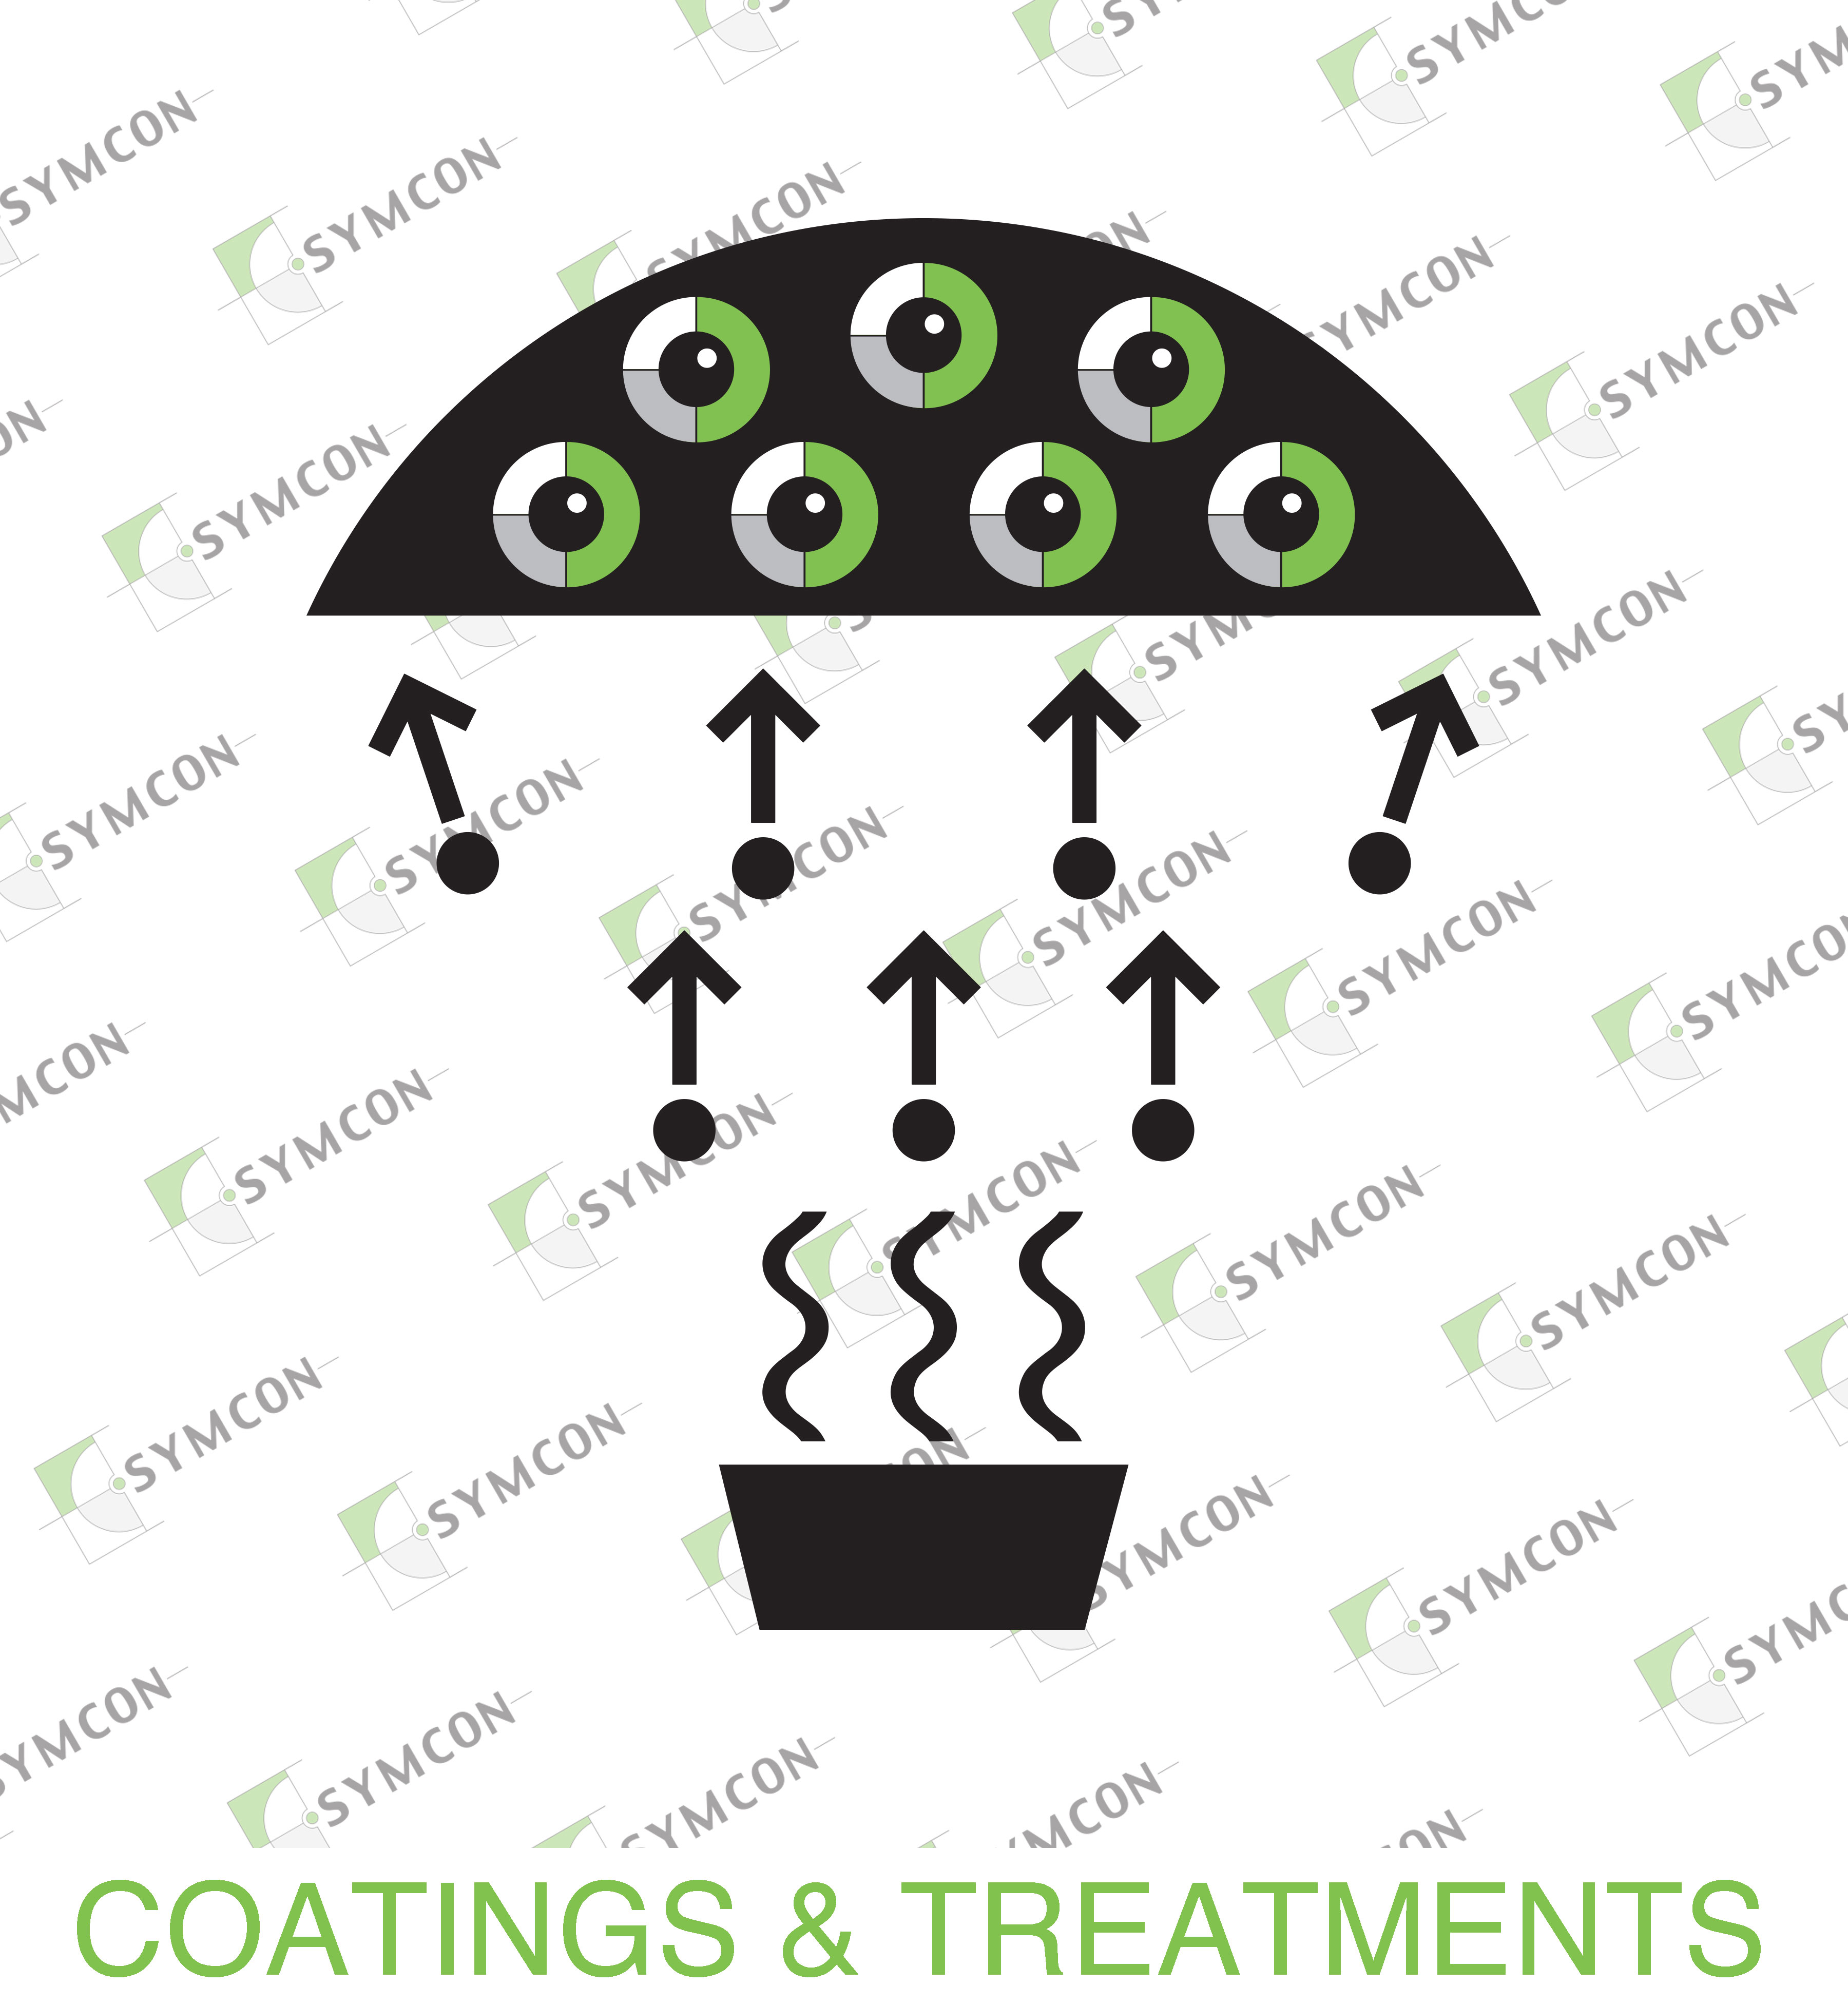 symcon-coatings-treatments